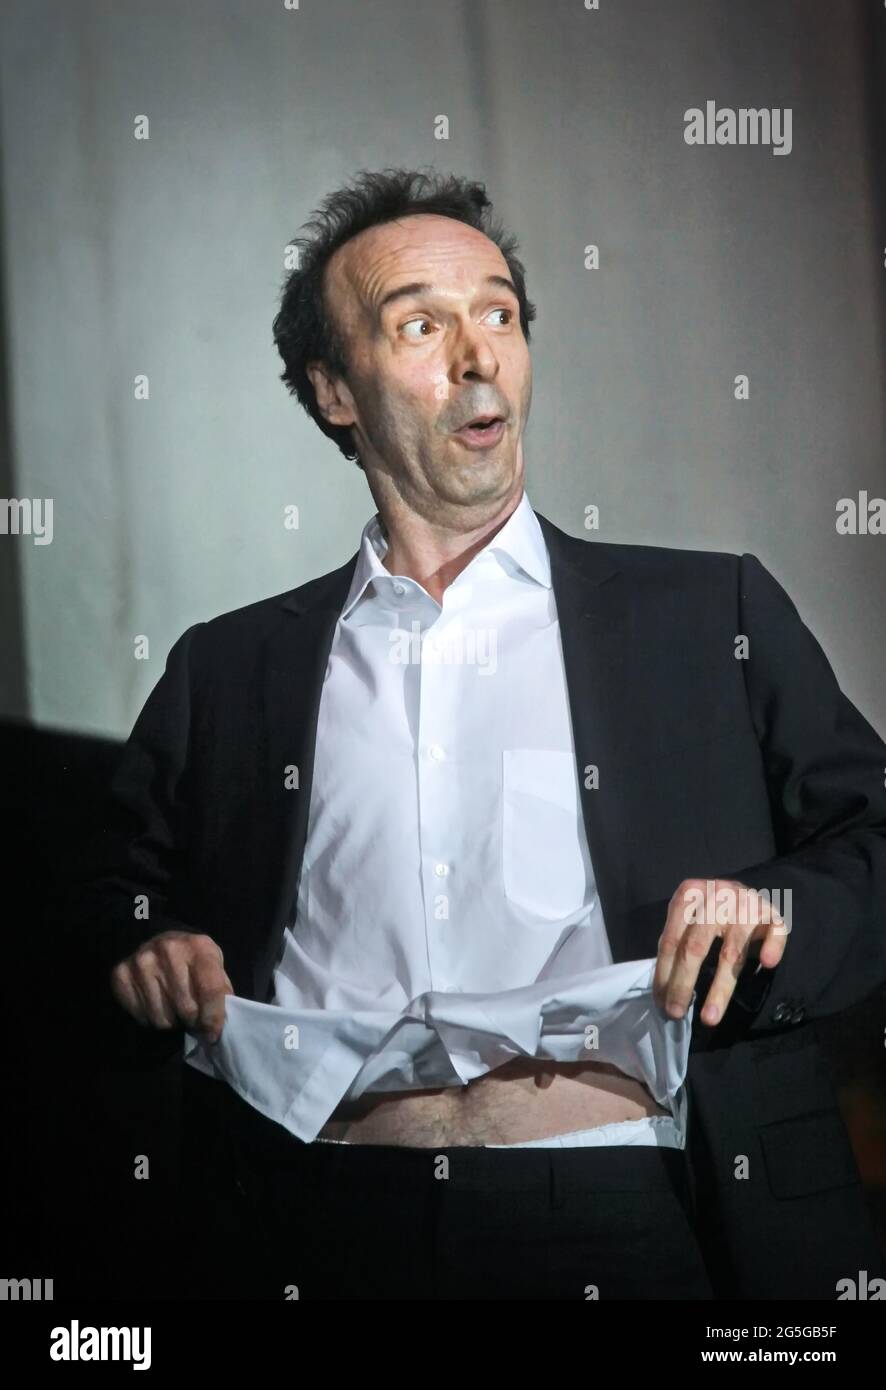 El actor italiano Roberto Benigni, gestos durante una ceremonia. Roma, Italia - Abril 2011 Foto de stock